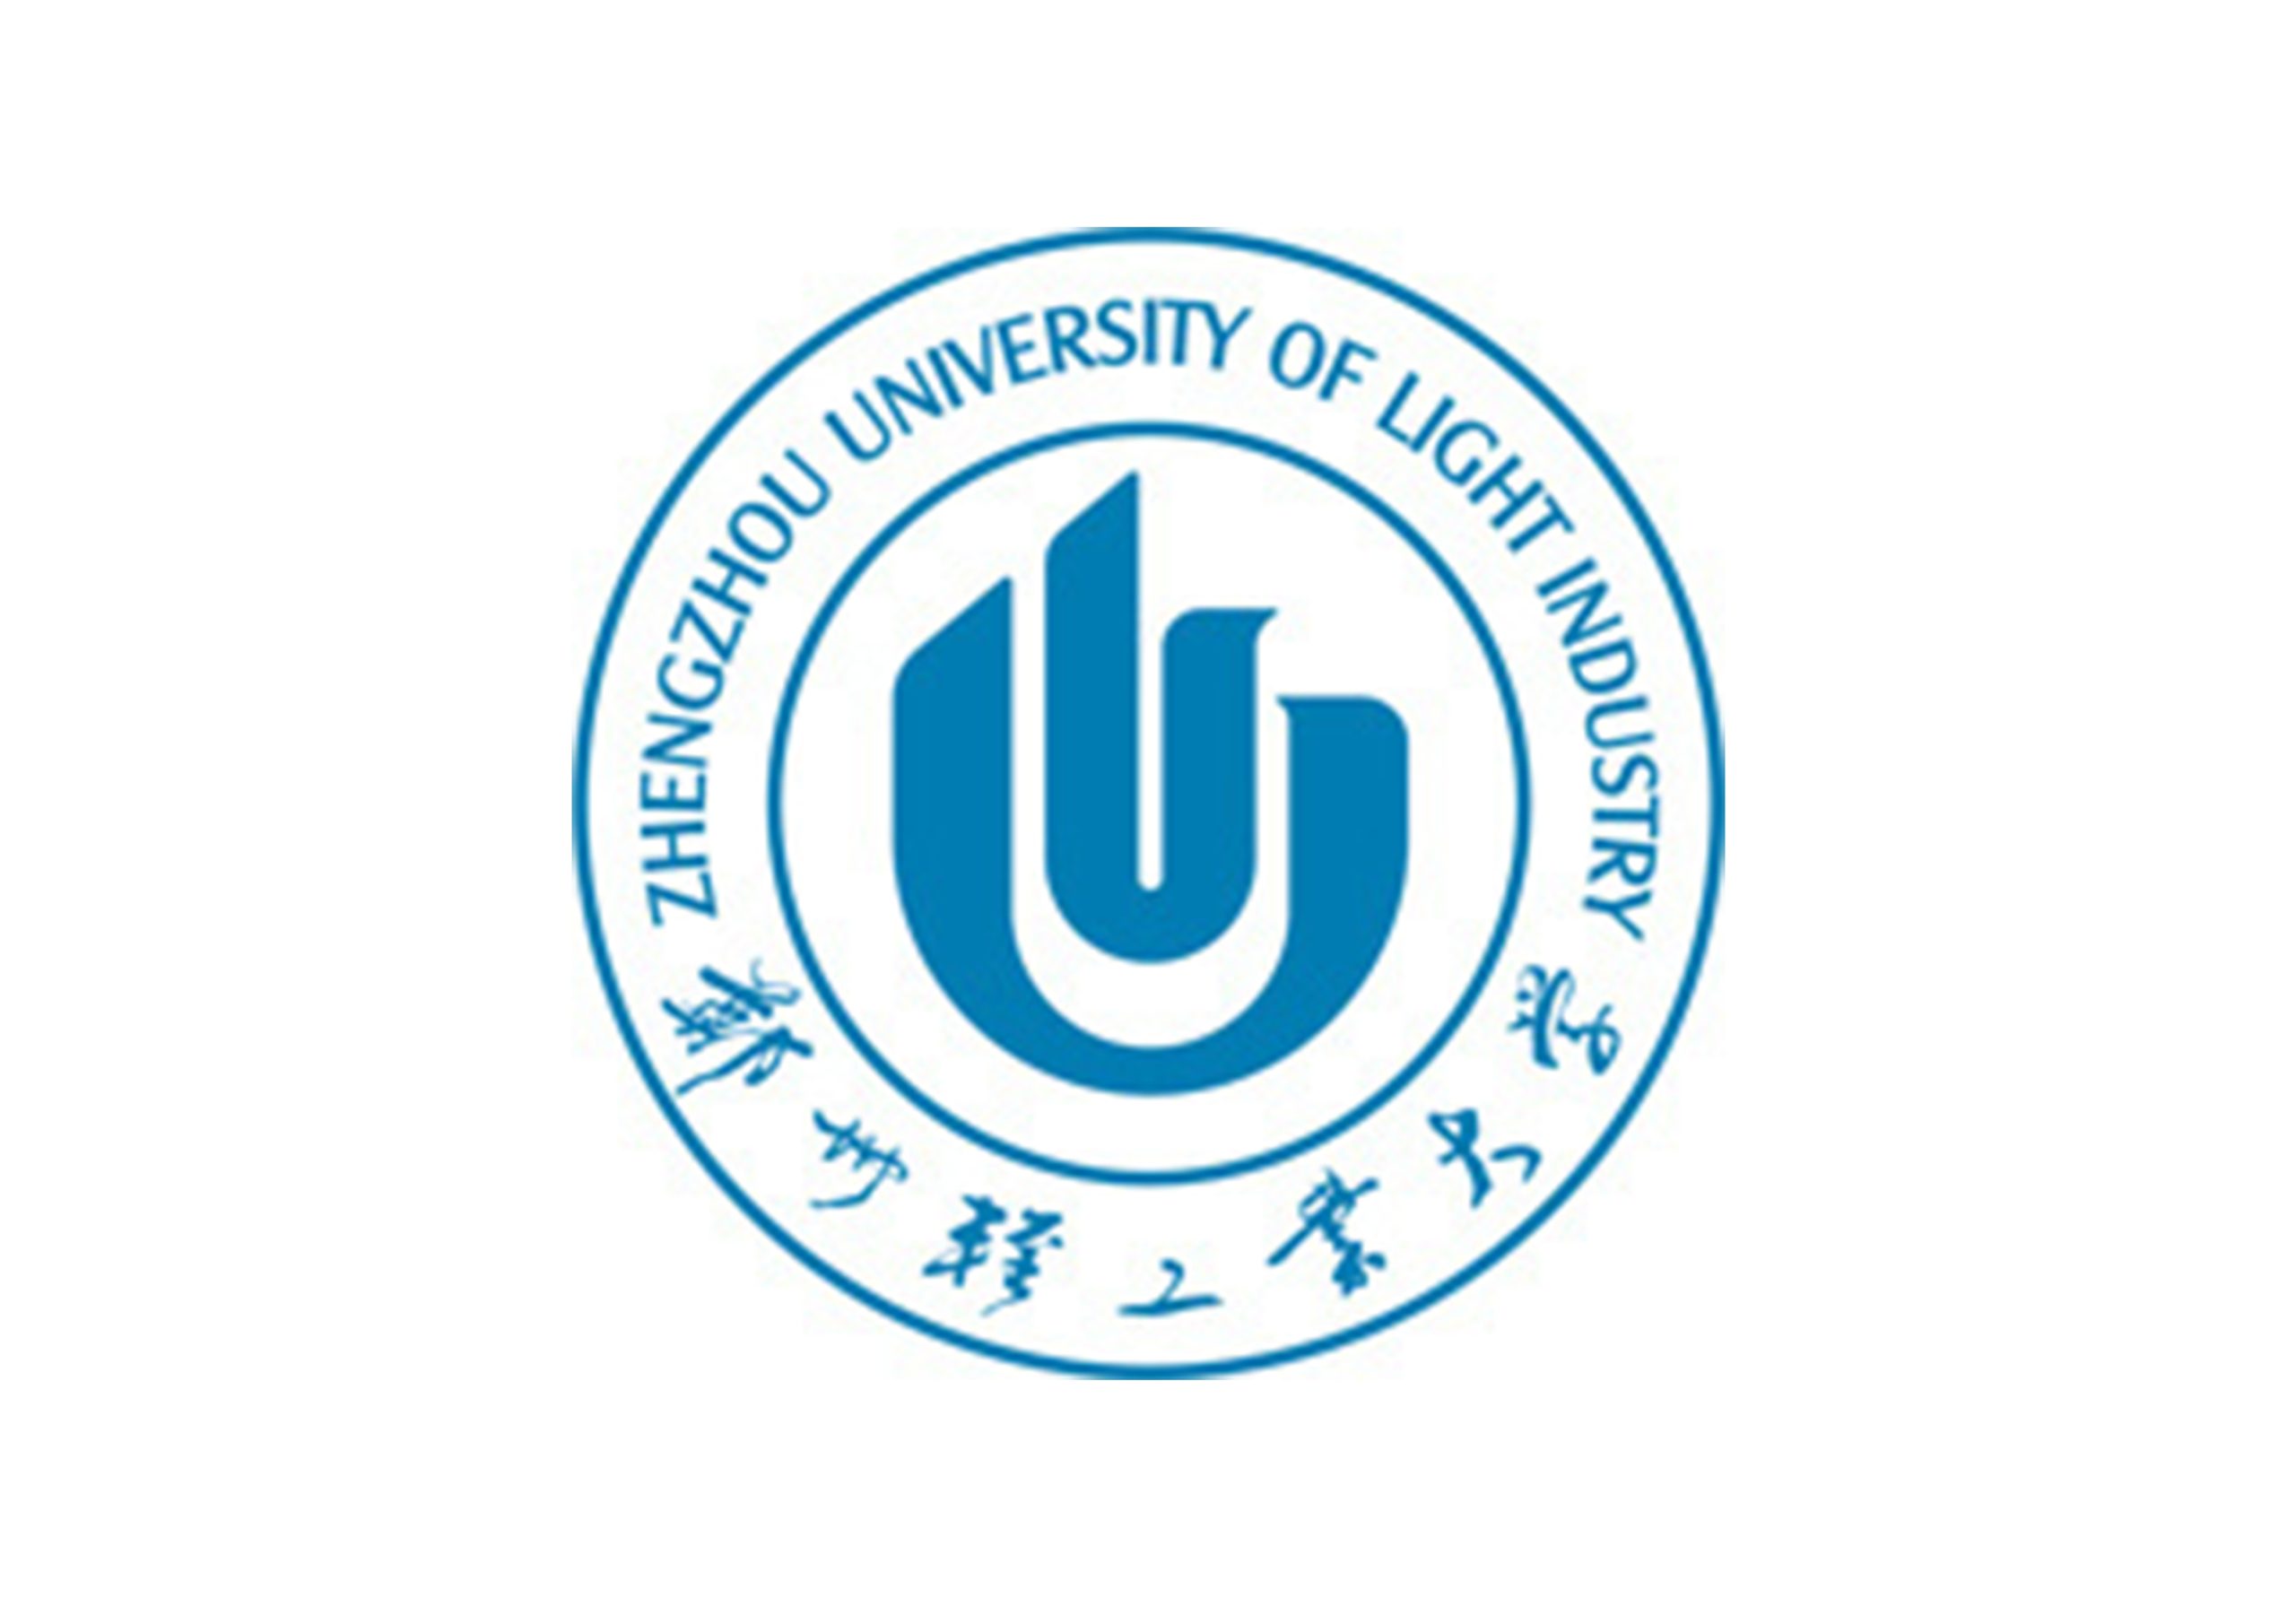 郑州轻工业大学易斯顿美术学院申请分立为河南郑州美术学院-365艺考网